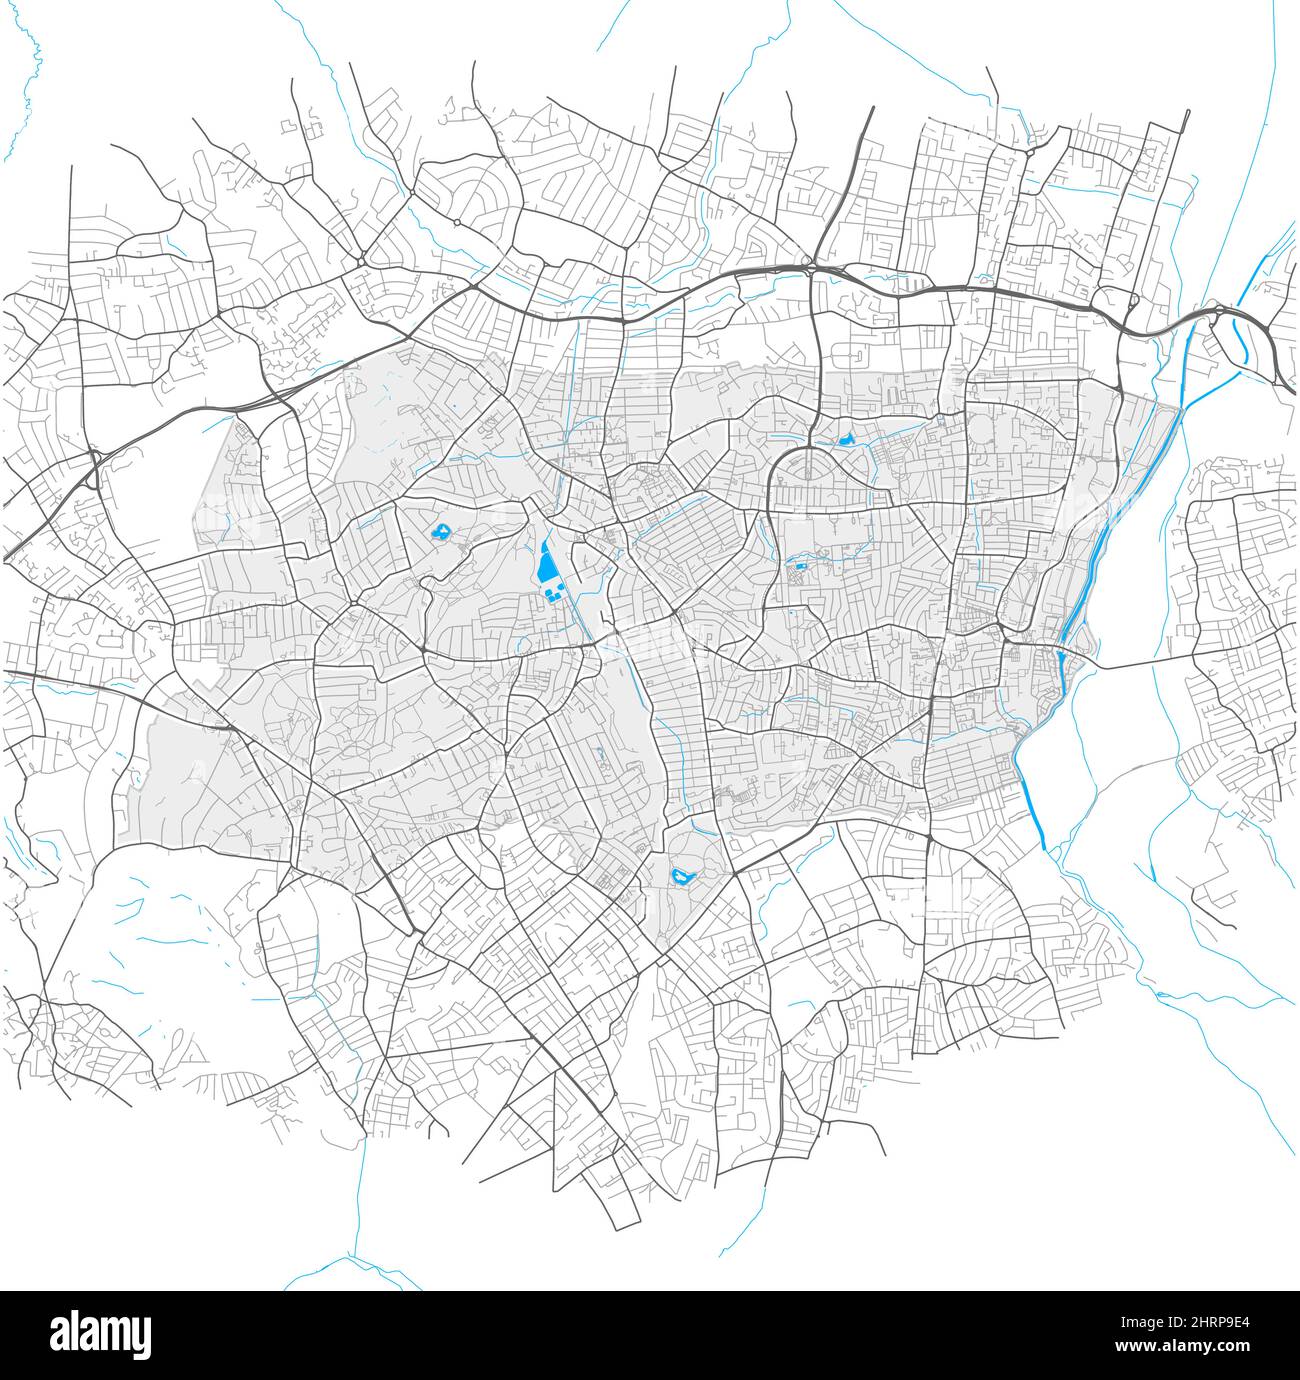 Haringey, Greater London, Regno Unito, mappa vettoriale ad alto dettaglio con confini della città e percorsi modificabili. Contorni bianchi per le strade principali. Molti più piccoli Illustrazione Vettoriale